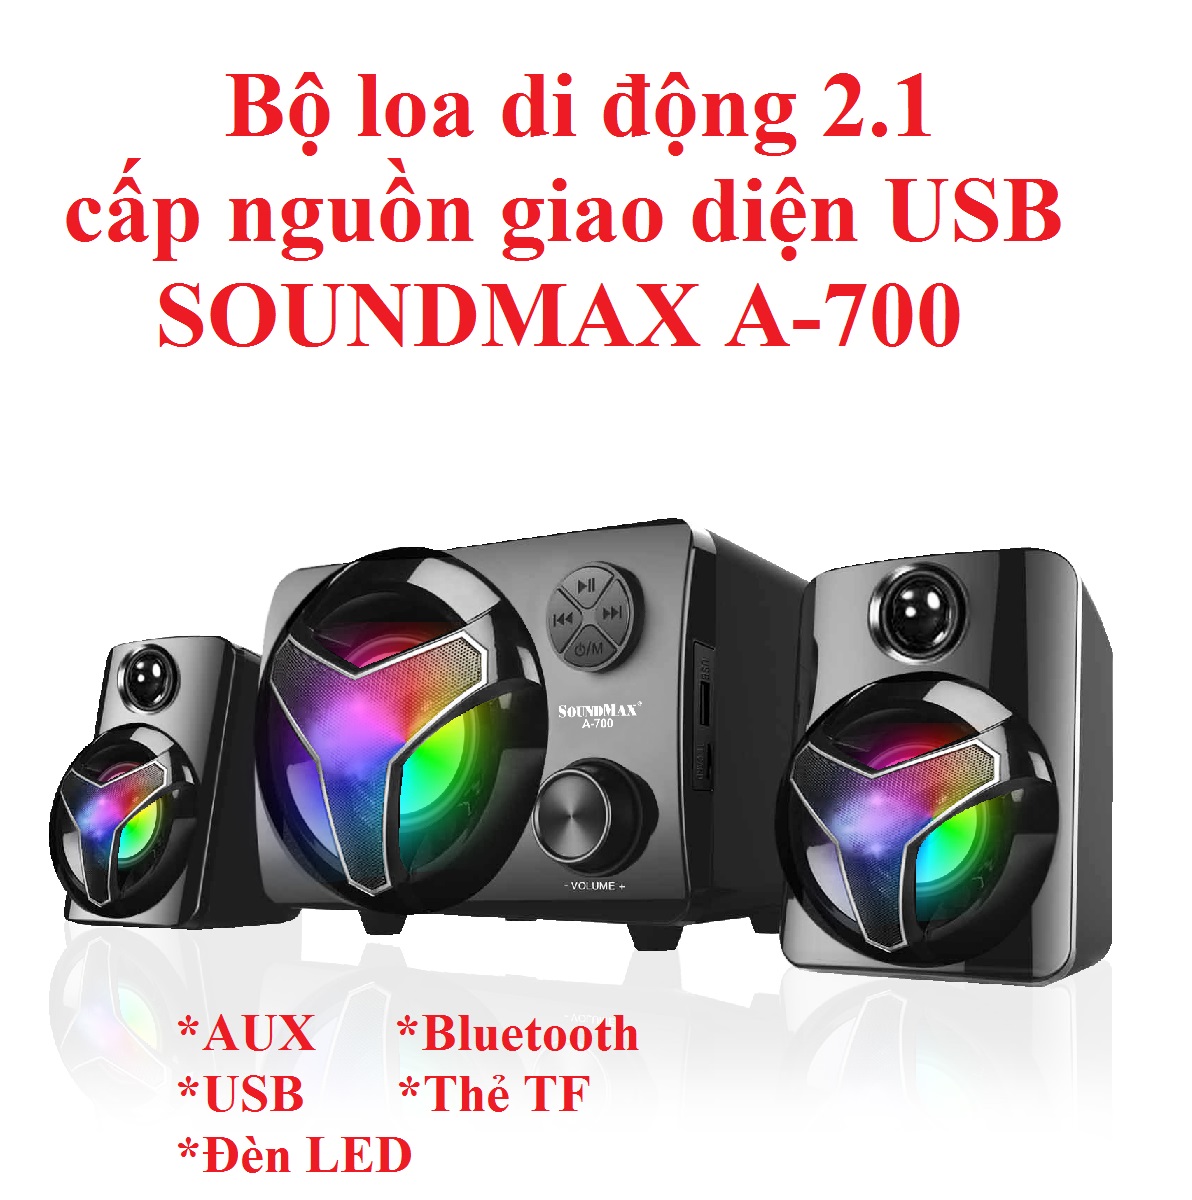 Hình ảnh Bộ loa di động 2.1 kết nối AUX / Bluetooth nguồn USB SOUNDMAX A-700 - Hàng chính hãng